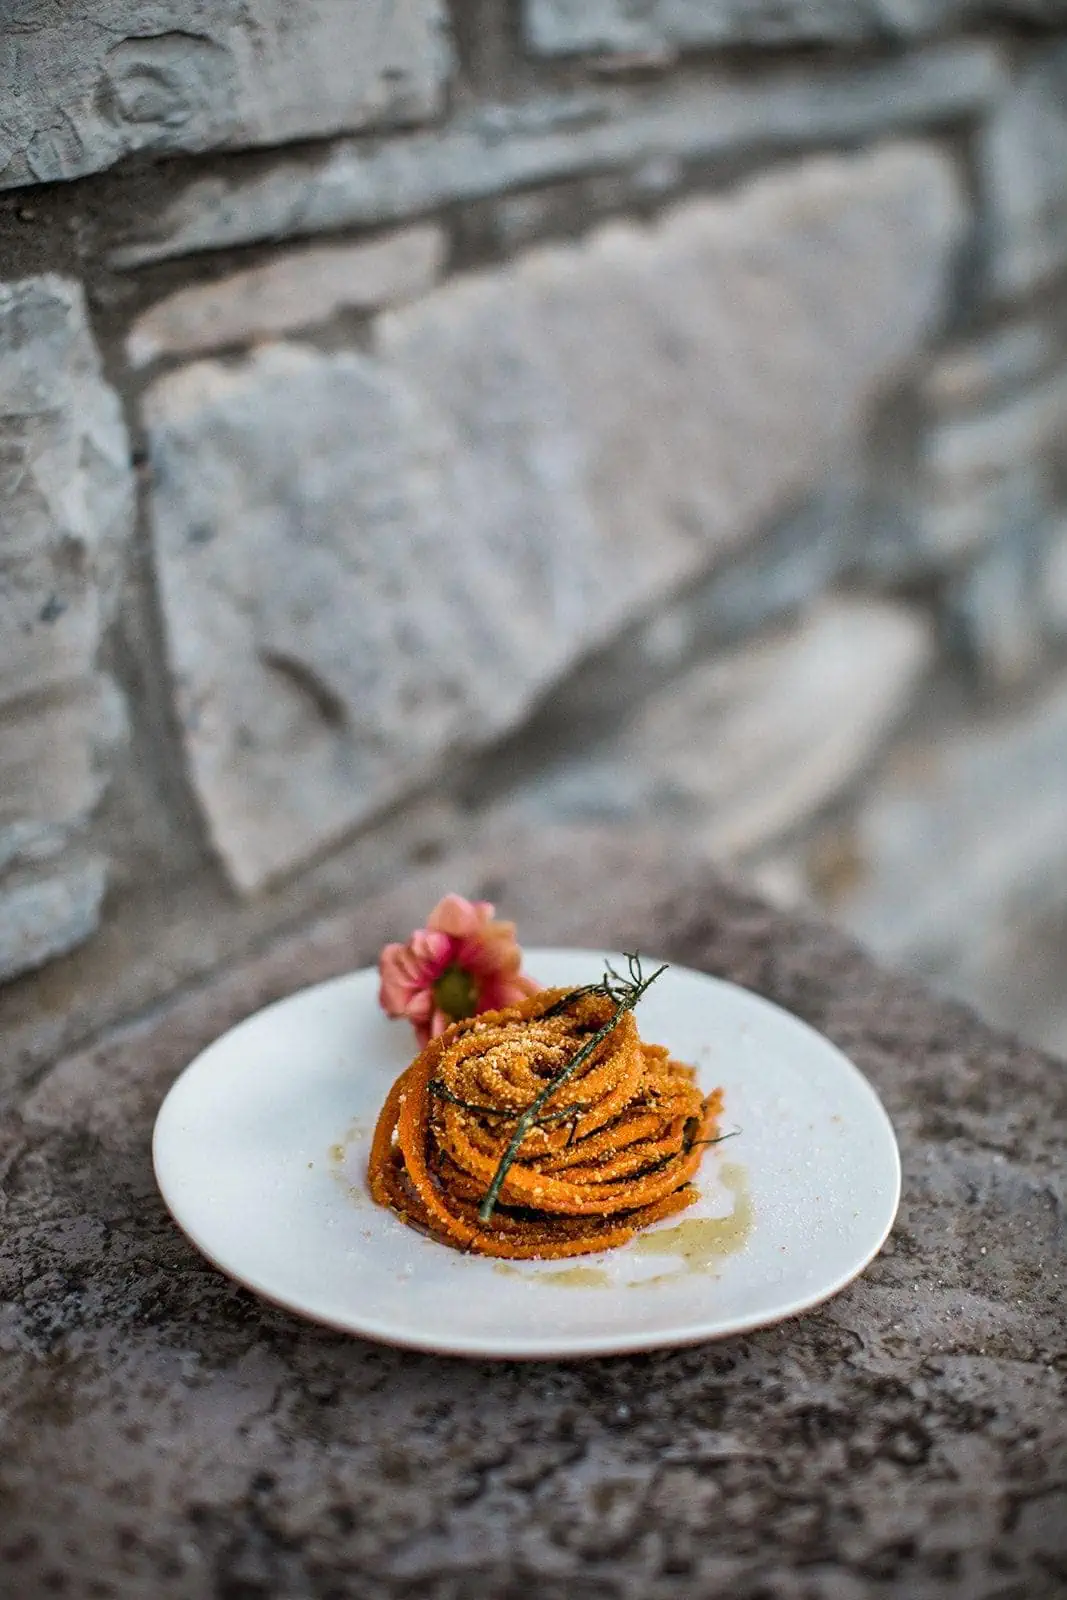 Authentic Italian pasta dish created by chef at Villa Torno